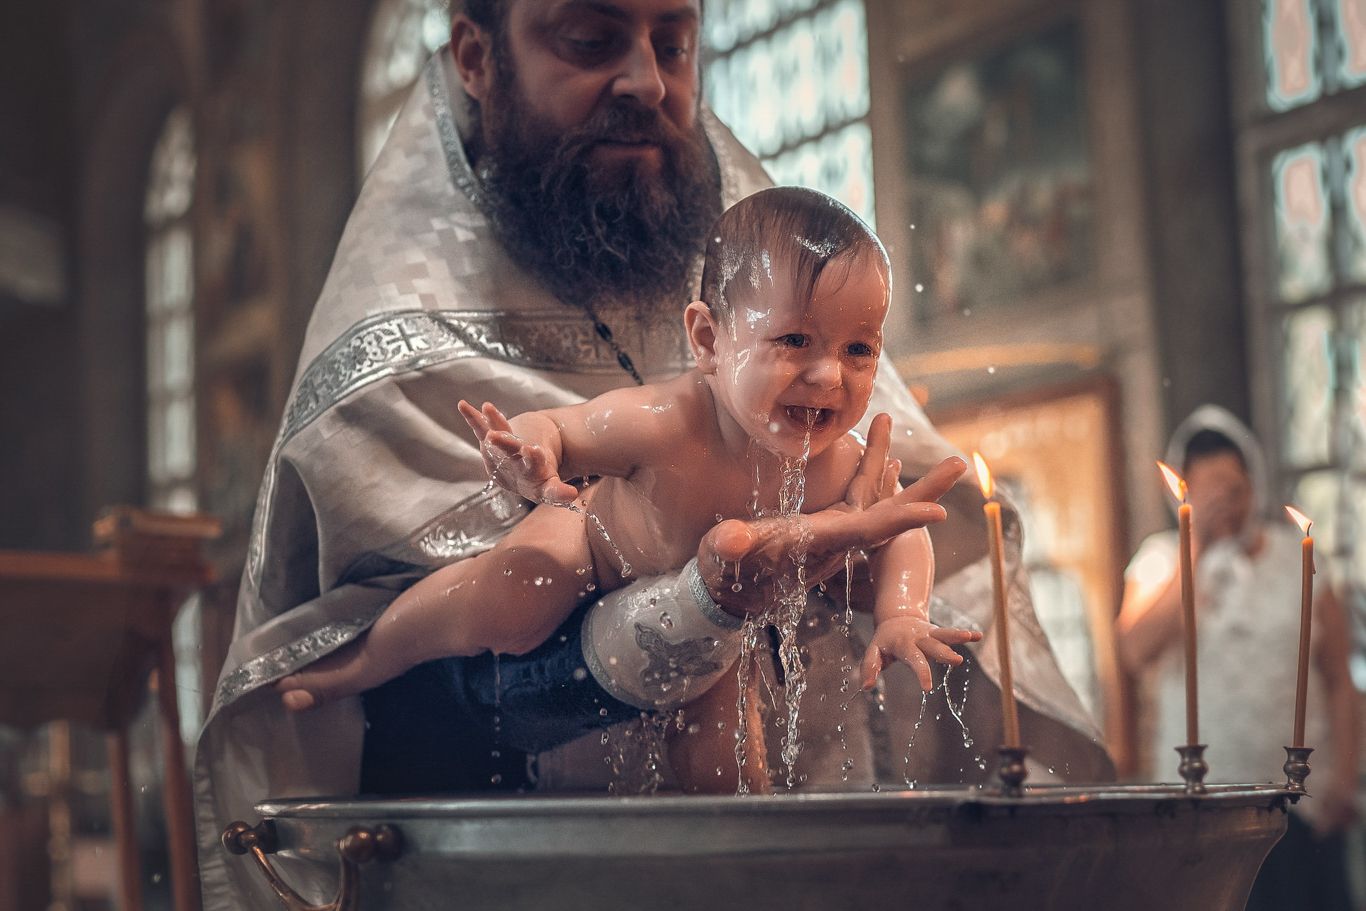 Таинство крещения